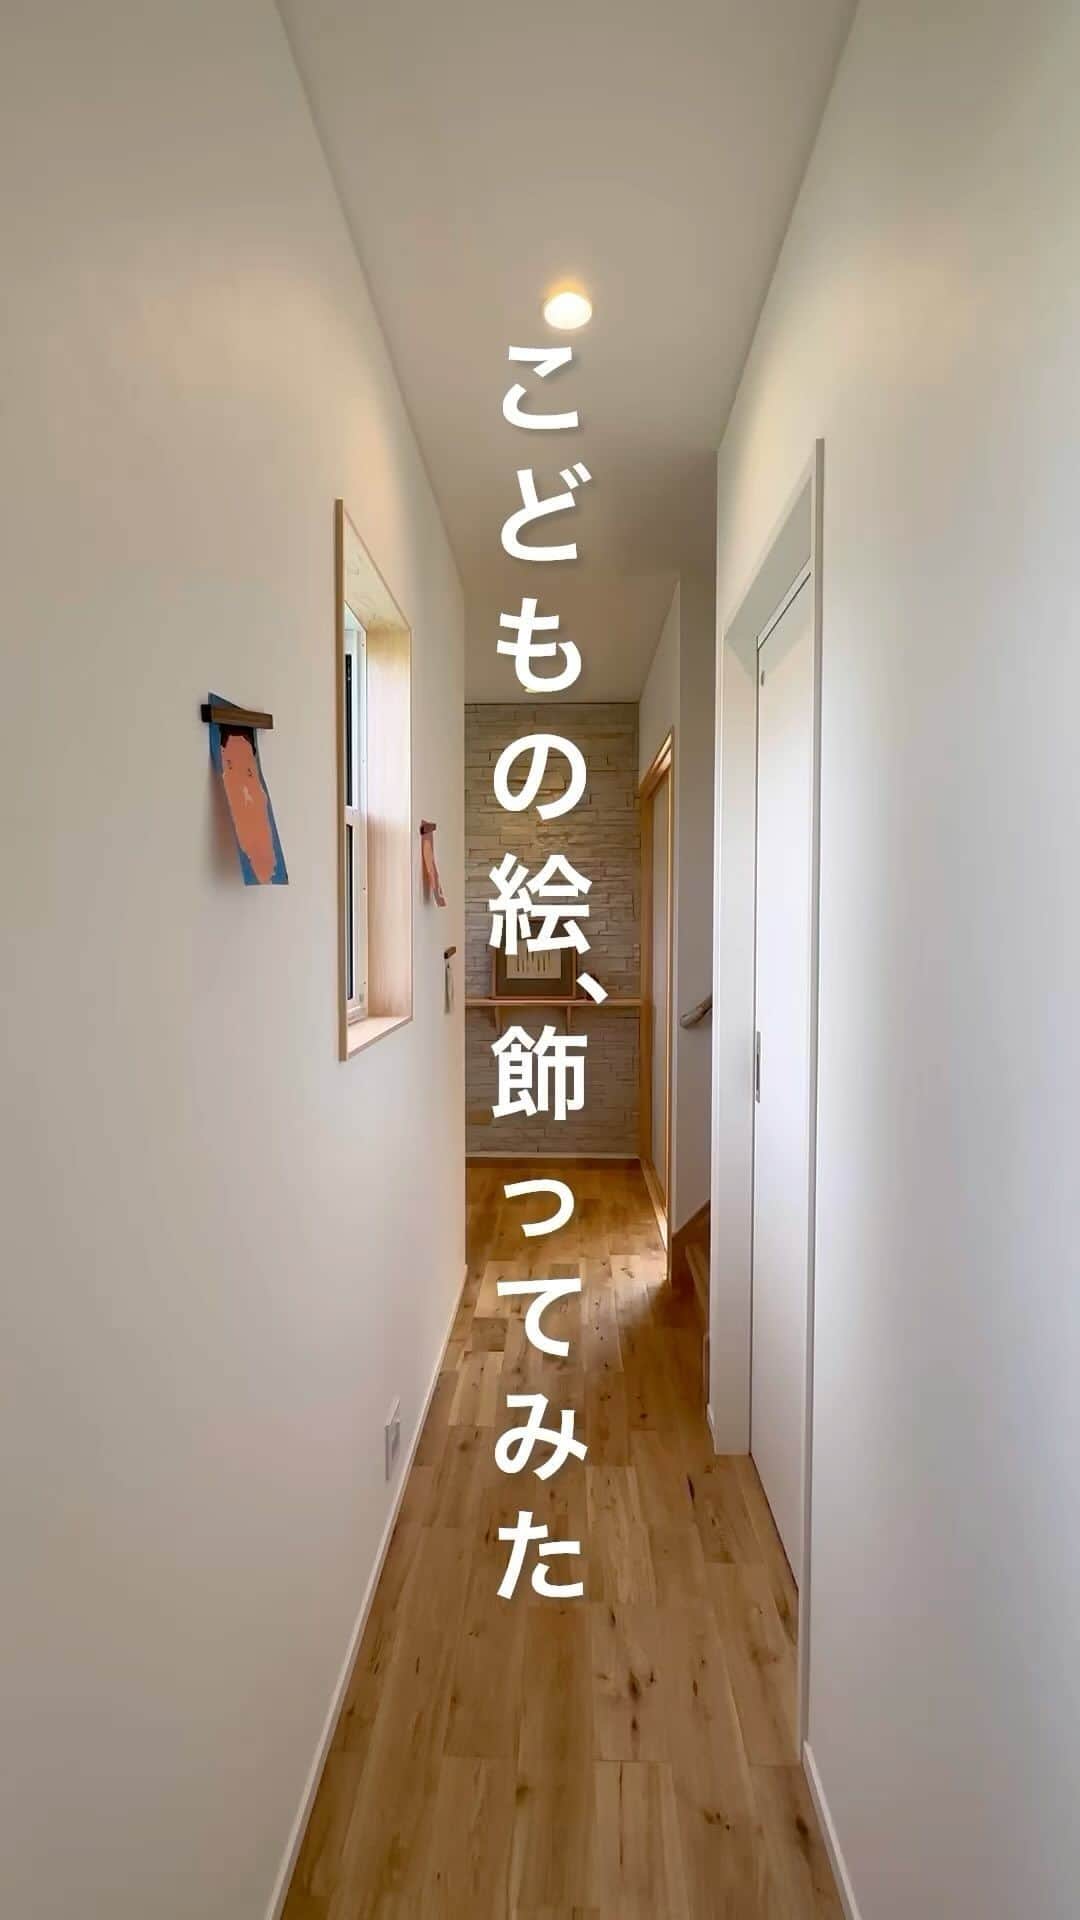 （有）岡崎工務店のインスタグラム：「. 富山県滑川市の工務店です😊 自然素材を使って社員大工が建てる家💪 *************  「こどもの絵飾ってみた」  みなさんはお家で お子さんの絵を飾っていますか？ 飾るとしたらどこに飾りますか？  我が家は廊下にマグネットのつく FEボードを施工しました  マグネットで気軽に飾れるので 壁に穴を開けずに済むのが嬉しいのと 一時的に飾れるのも便利  なにより可愛いが溢れています  気になることがあれば お気軽にコメントくださいね🍄  *************  HPではたくさんのお家の施工例をご紹介しています♩ 是非、覗いてみてください🌟 HPへはトップページ(@okazakikoumuten)からどうぞ😊  資料のご請求、または来場予約もHPから受付中です♬  ———————————————————- 電話 076-475-9749 ———————————————————- 資料請求はこちらから→@okazakikoumutenotoiawase ———————————————————- #FEボード #マグネット壁 #壁 #廊下 #マグネット #マグネットのつく壁 #子供のいる暮らし #子供の絵 #こどもの絵 #インテリア #デザイン #こどものいる暮らし #マグネット収納 #こどもと暮らす #おうちギャラリー #おうち美術館 #動線 #マイホーム #家づくり #家づくり情報収集 #家づくり記録 #自然素材の家 #注文住宅 #自由設計 #自由設計の家 #富山工務店 #岡崎工務店 #滑川 #富山」